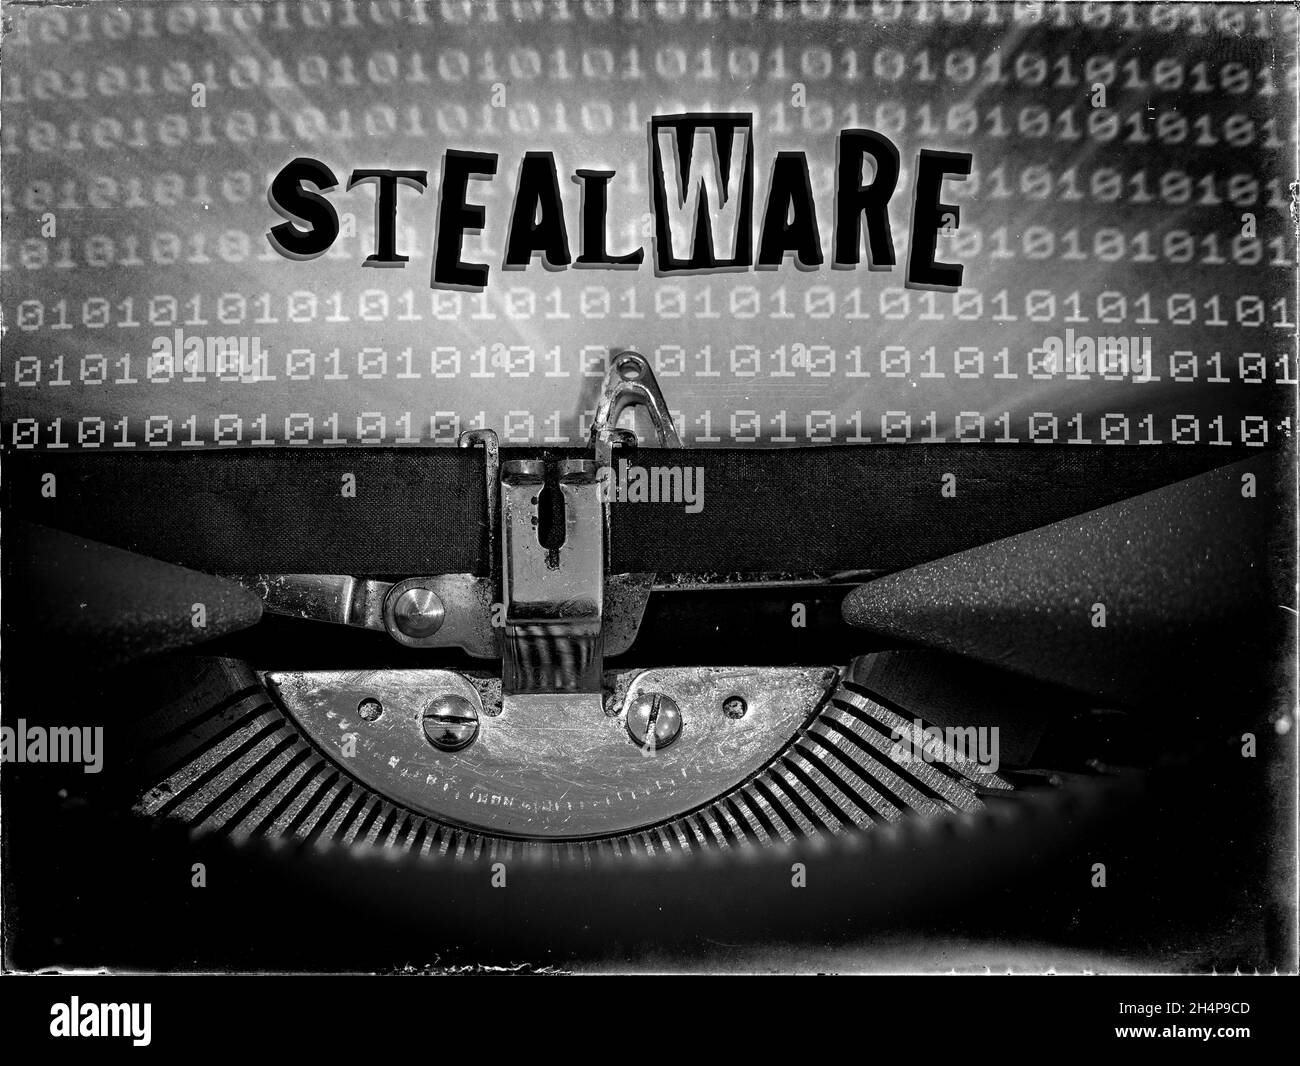 Stealware se muestra en una máquina de escribir vintage con un fondo de código binario Foto de stock